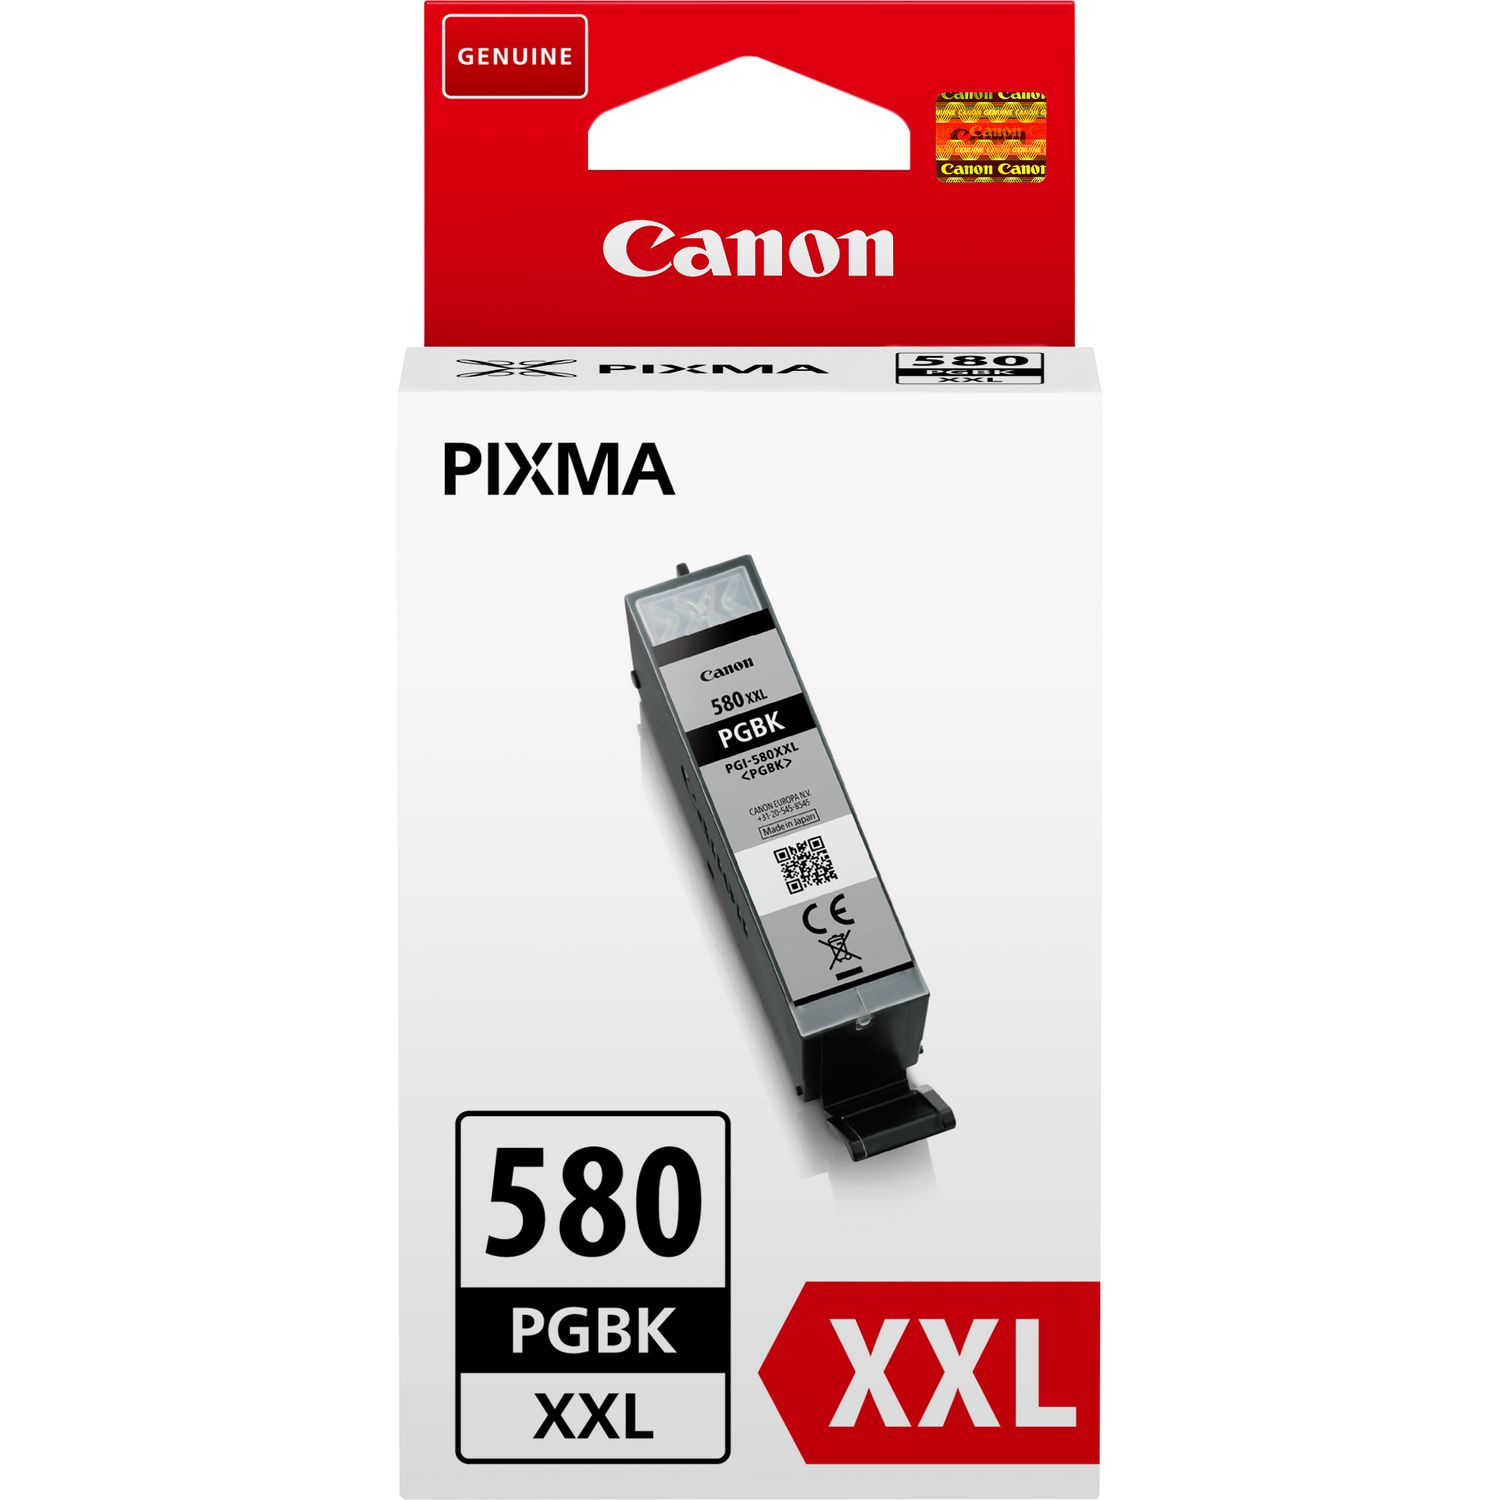 Canon PGI-580PGBK XXL - 25.7 ml - velikost XXL - černá - originál - inkoustový zásobník - pro PIXMA 1970C001